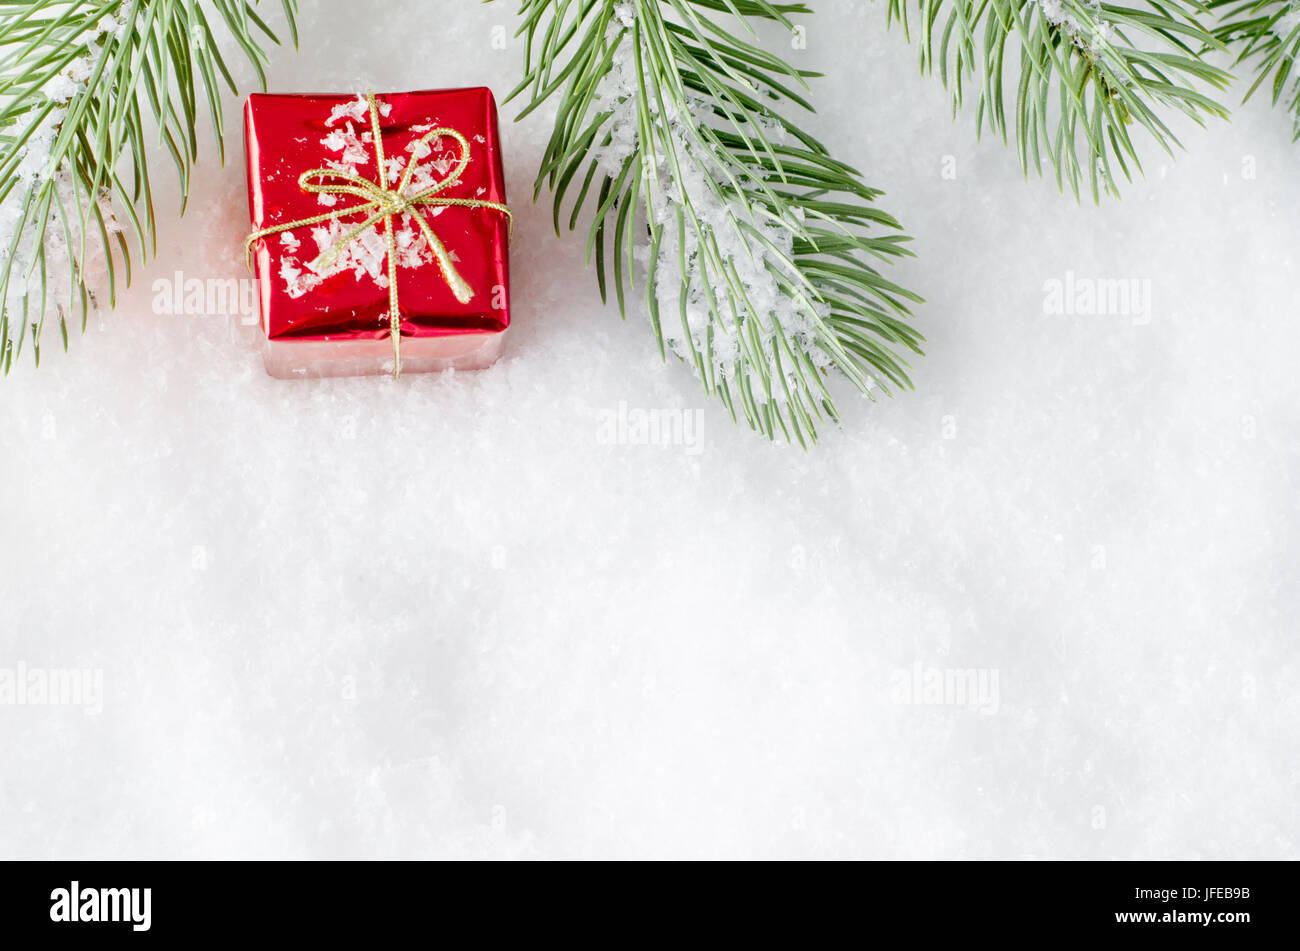 Ein oberen Rahmen Weihnachten Grenze des künstlichen Baum Wedel auf Kunstschnee mit kleinen glänzenden roten Geschenk-Box zwischen gelegt. Stockfoto